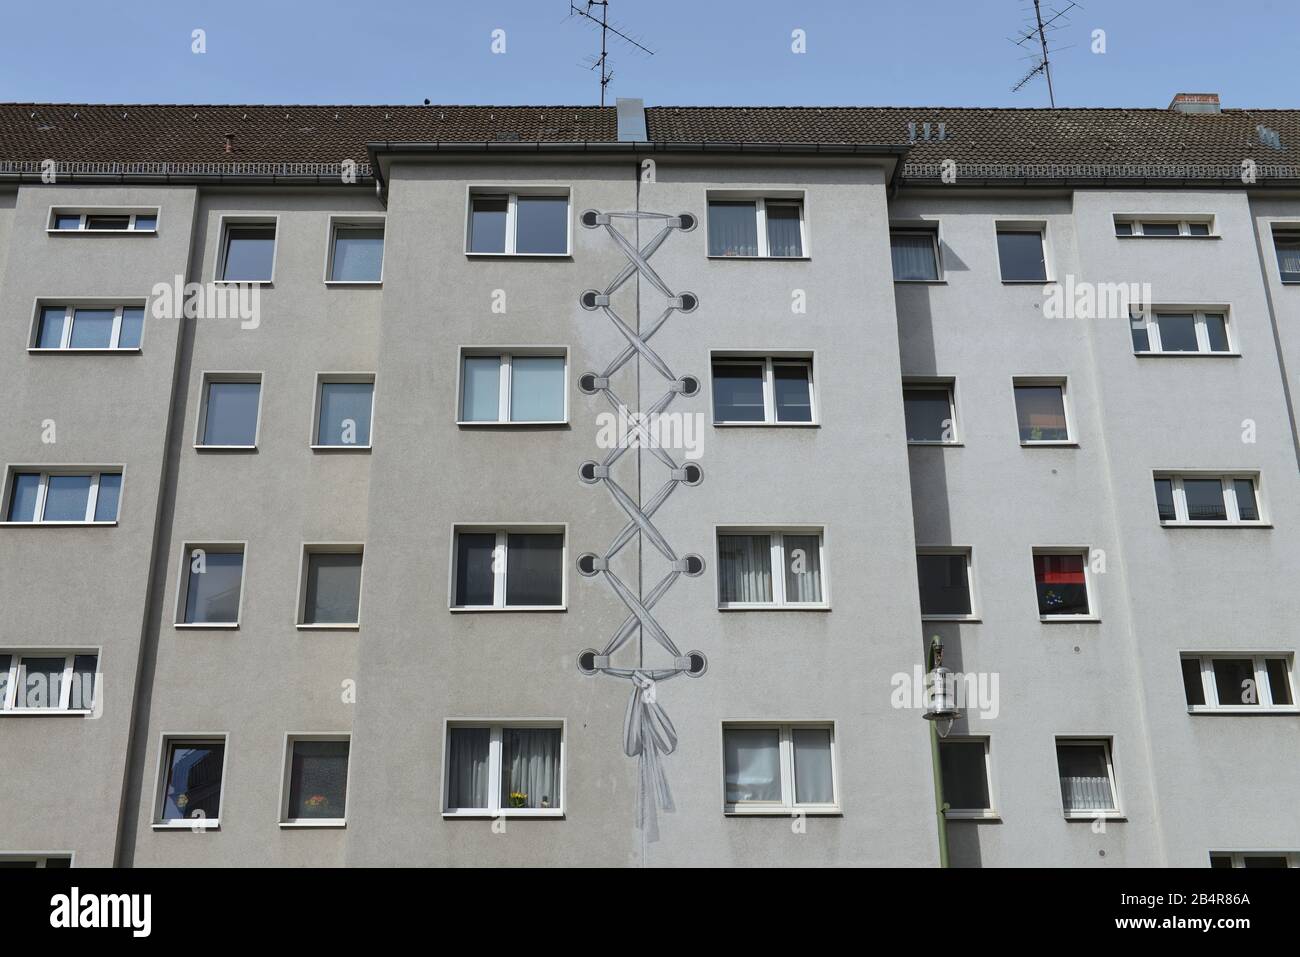 Wohnhaus, Hausmalerei, Kaerntener Strasse, Schoeneberg, Berlin, Deutschland Stock Photo